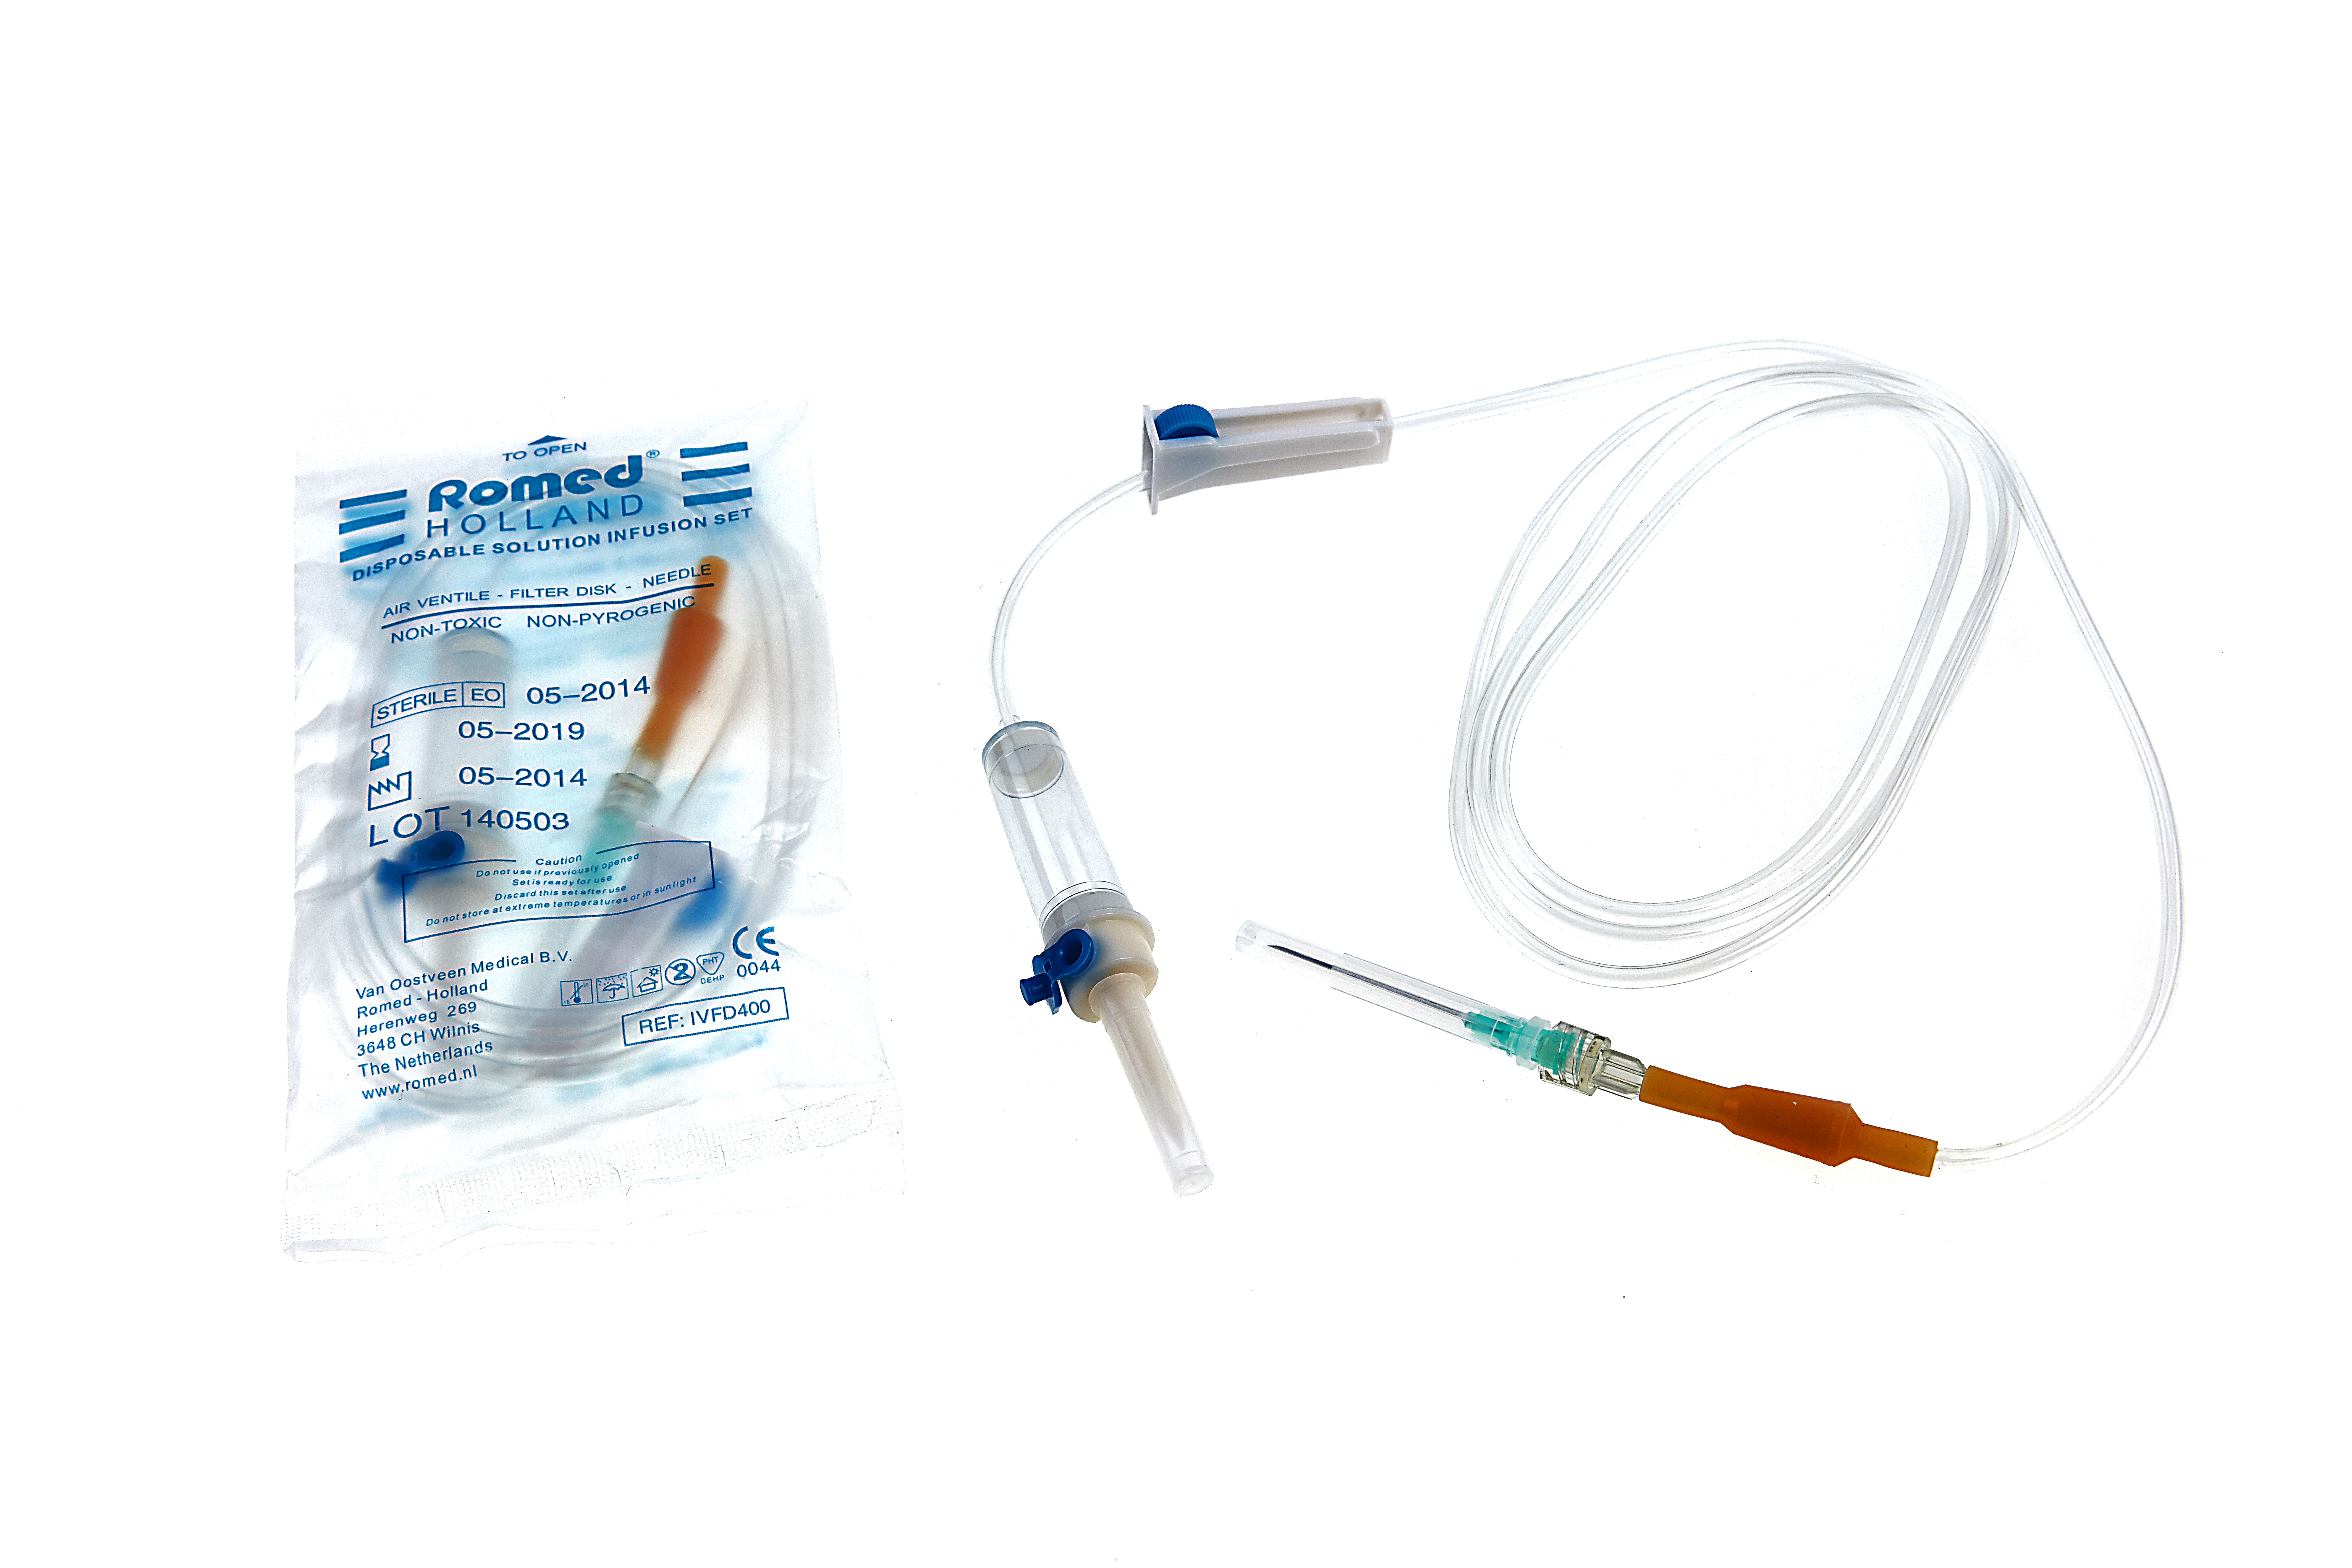 IVFD400 Romed infusieset met beluchting naald en filter, steriel per stuk verpakt in een polyzakje, 400 stuks in een karton.